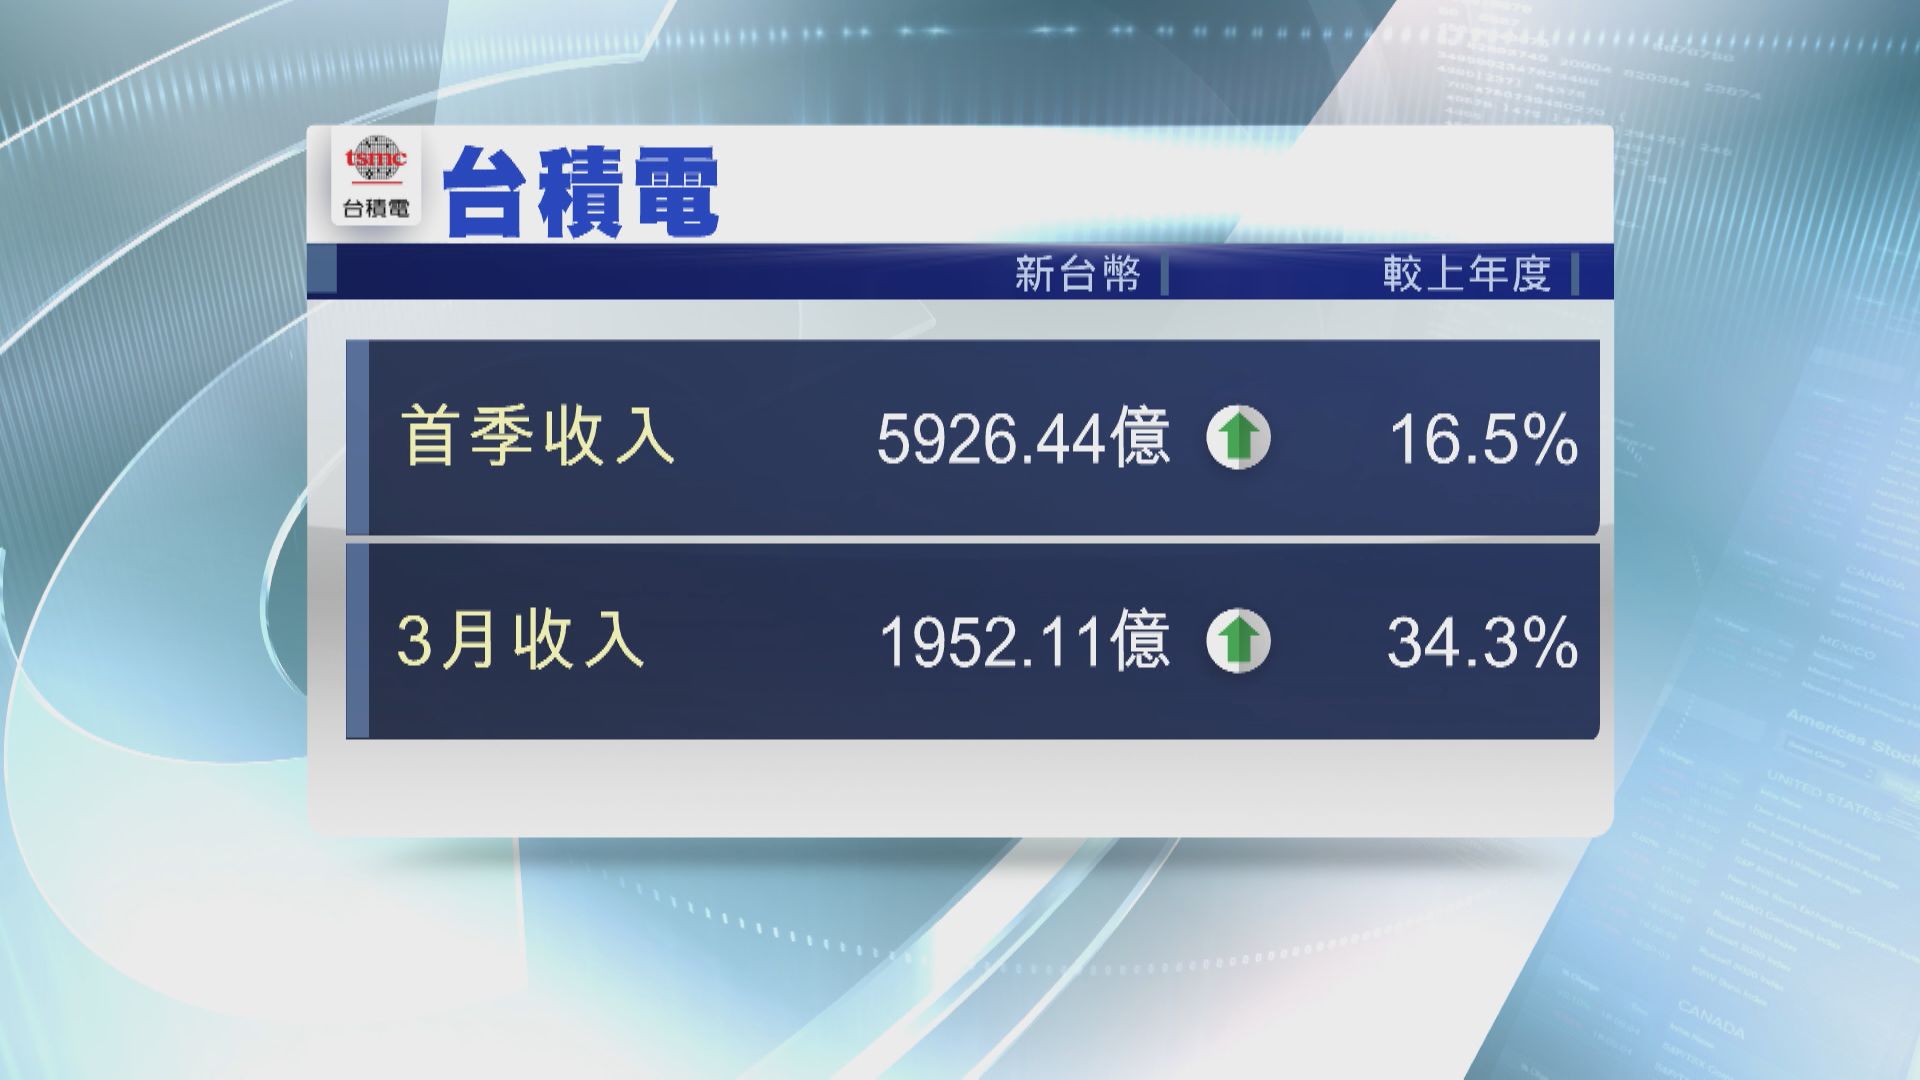 【符合指引】台積電首季收入升16.5% 五季最勁